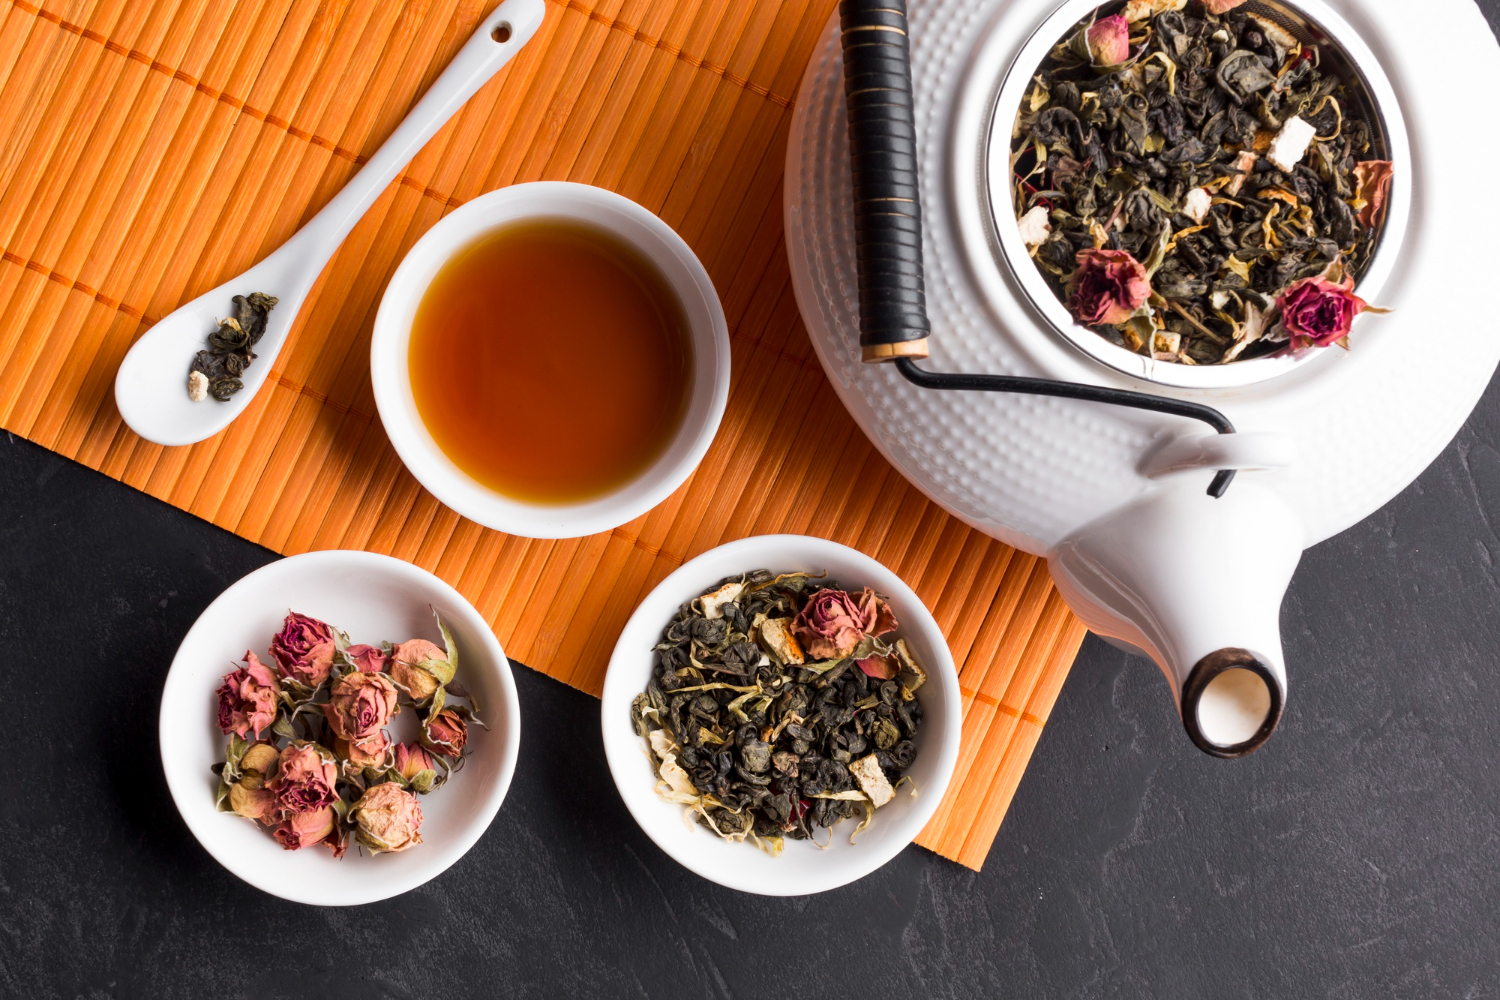 Диетолог Лазуренко: правильное использование чая в рационе помогает сбросить вес